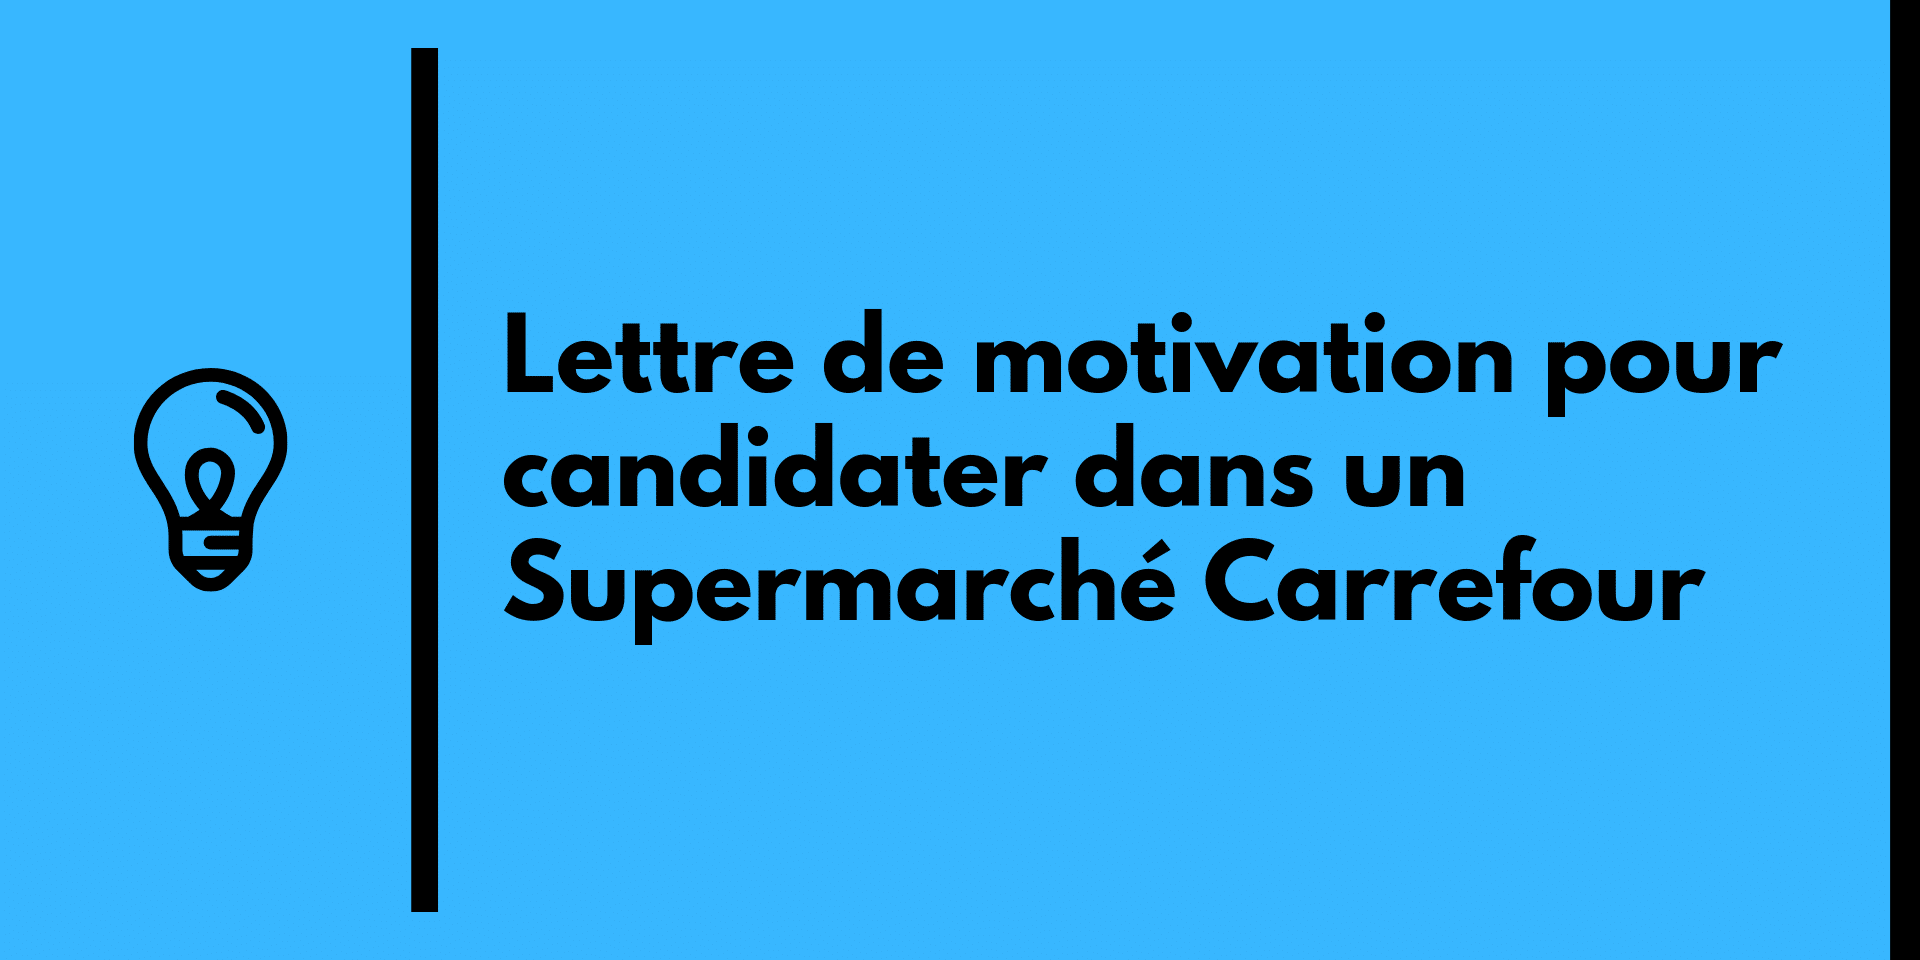 Lettre de motivation pour candidater dans un Supermarché Carrefour.